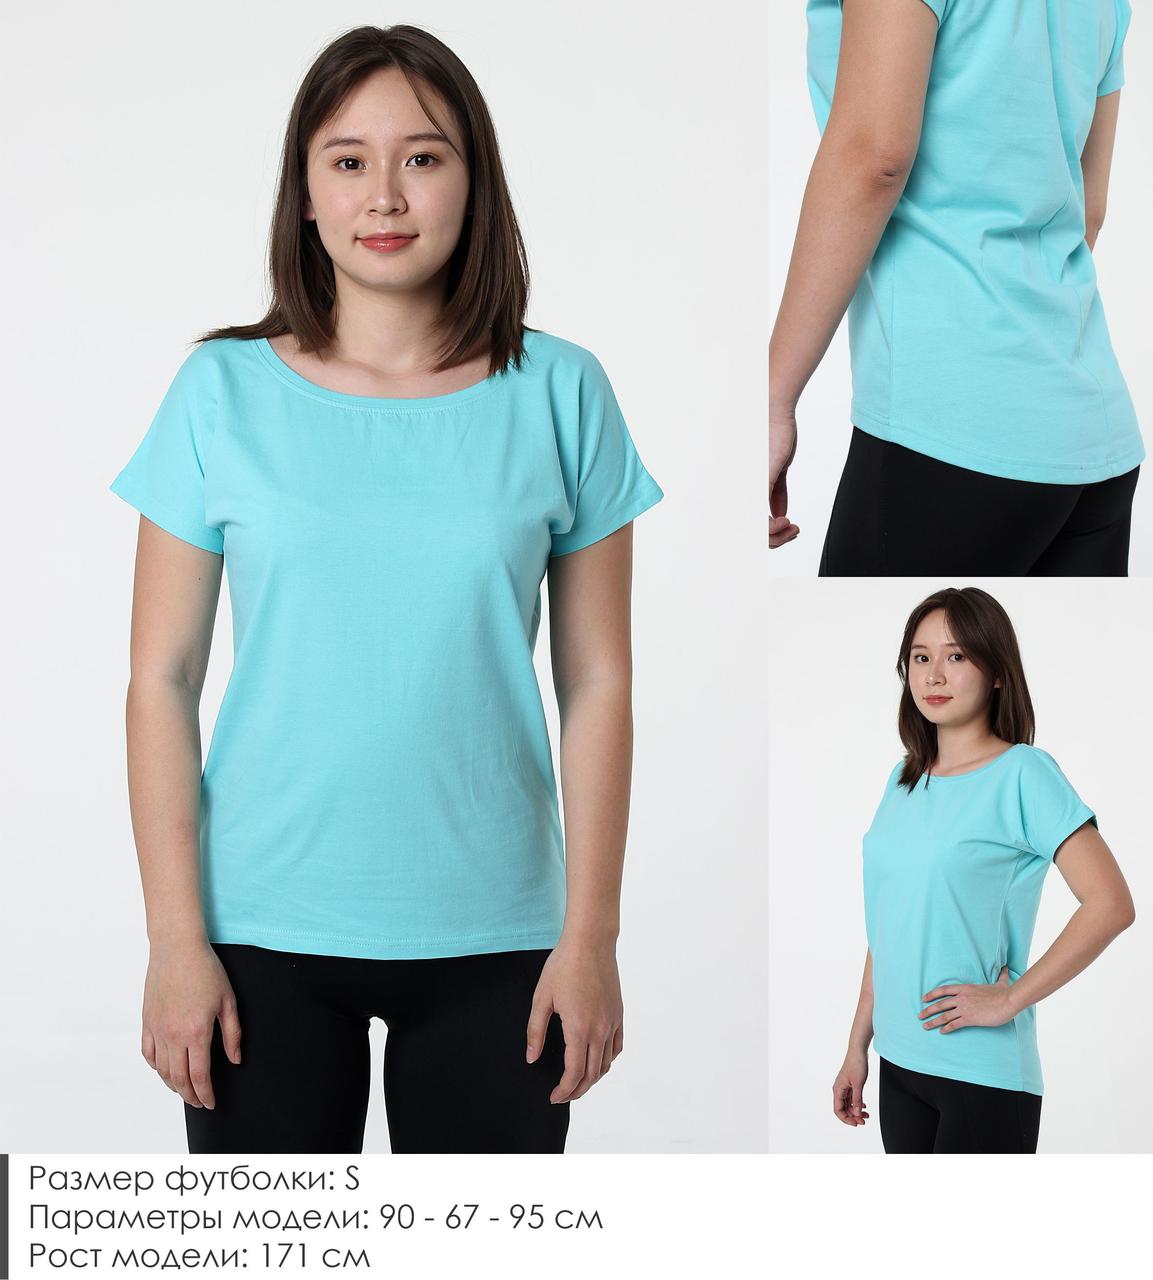 Удлиненная женская футболка из хлопка. Цвет: Бирюзовый